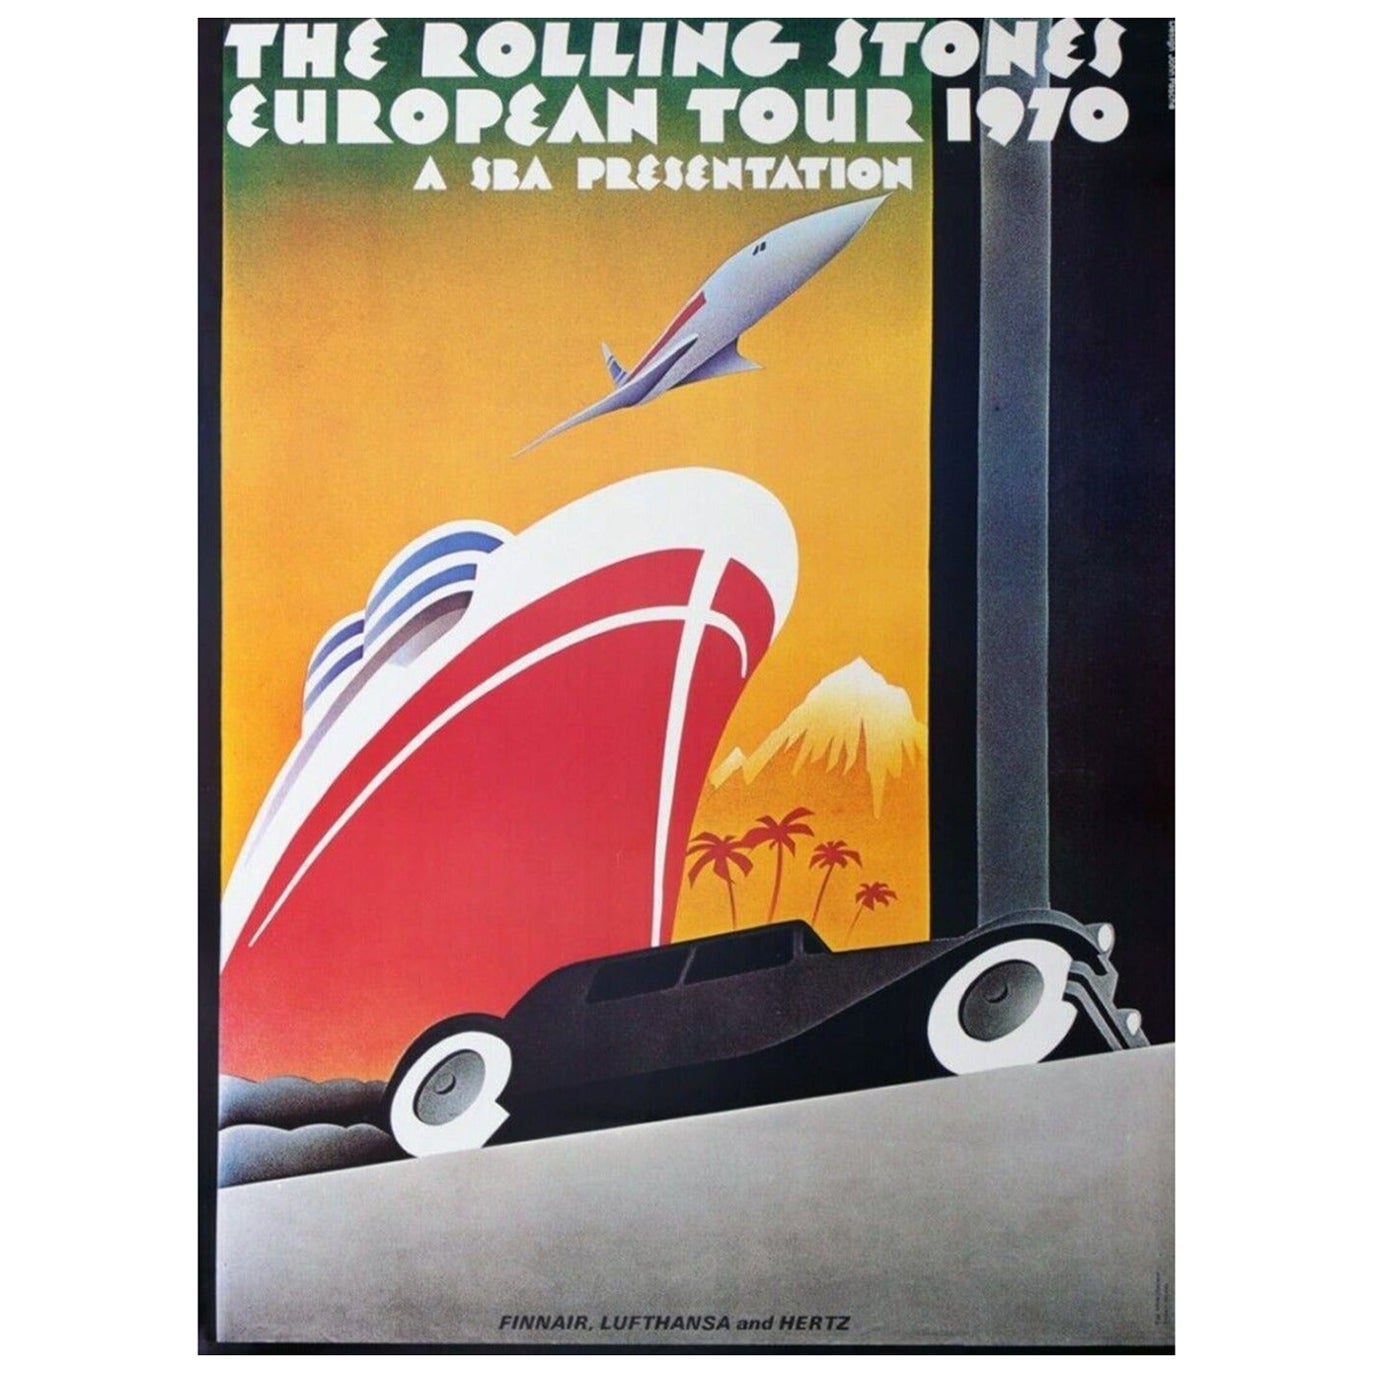 Les Rolling Stones - Tournée européenne de 1970 Affiche vintage d'origine